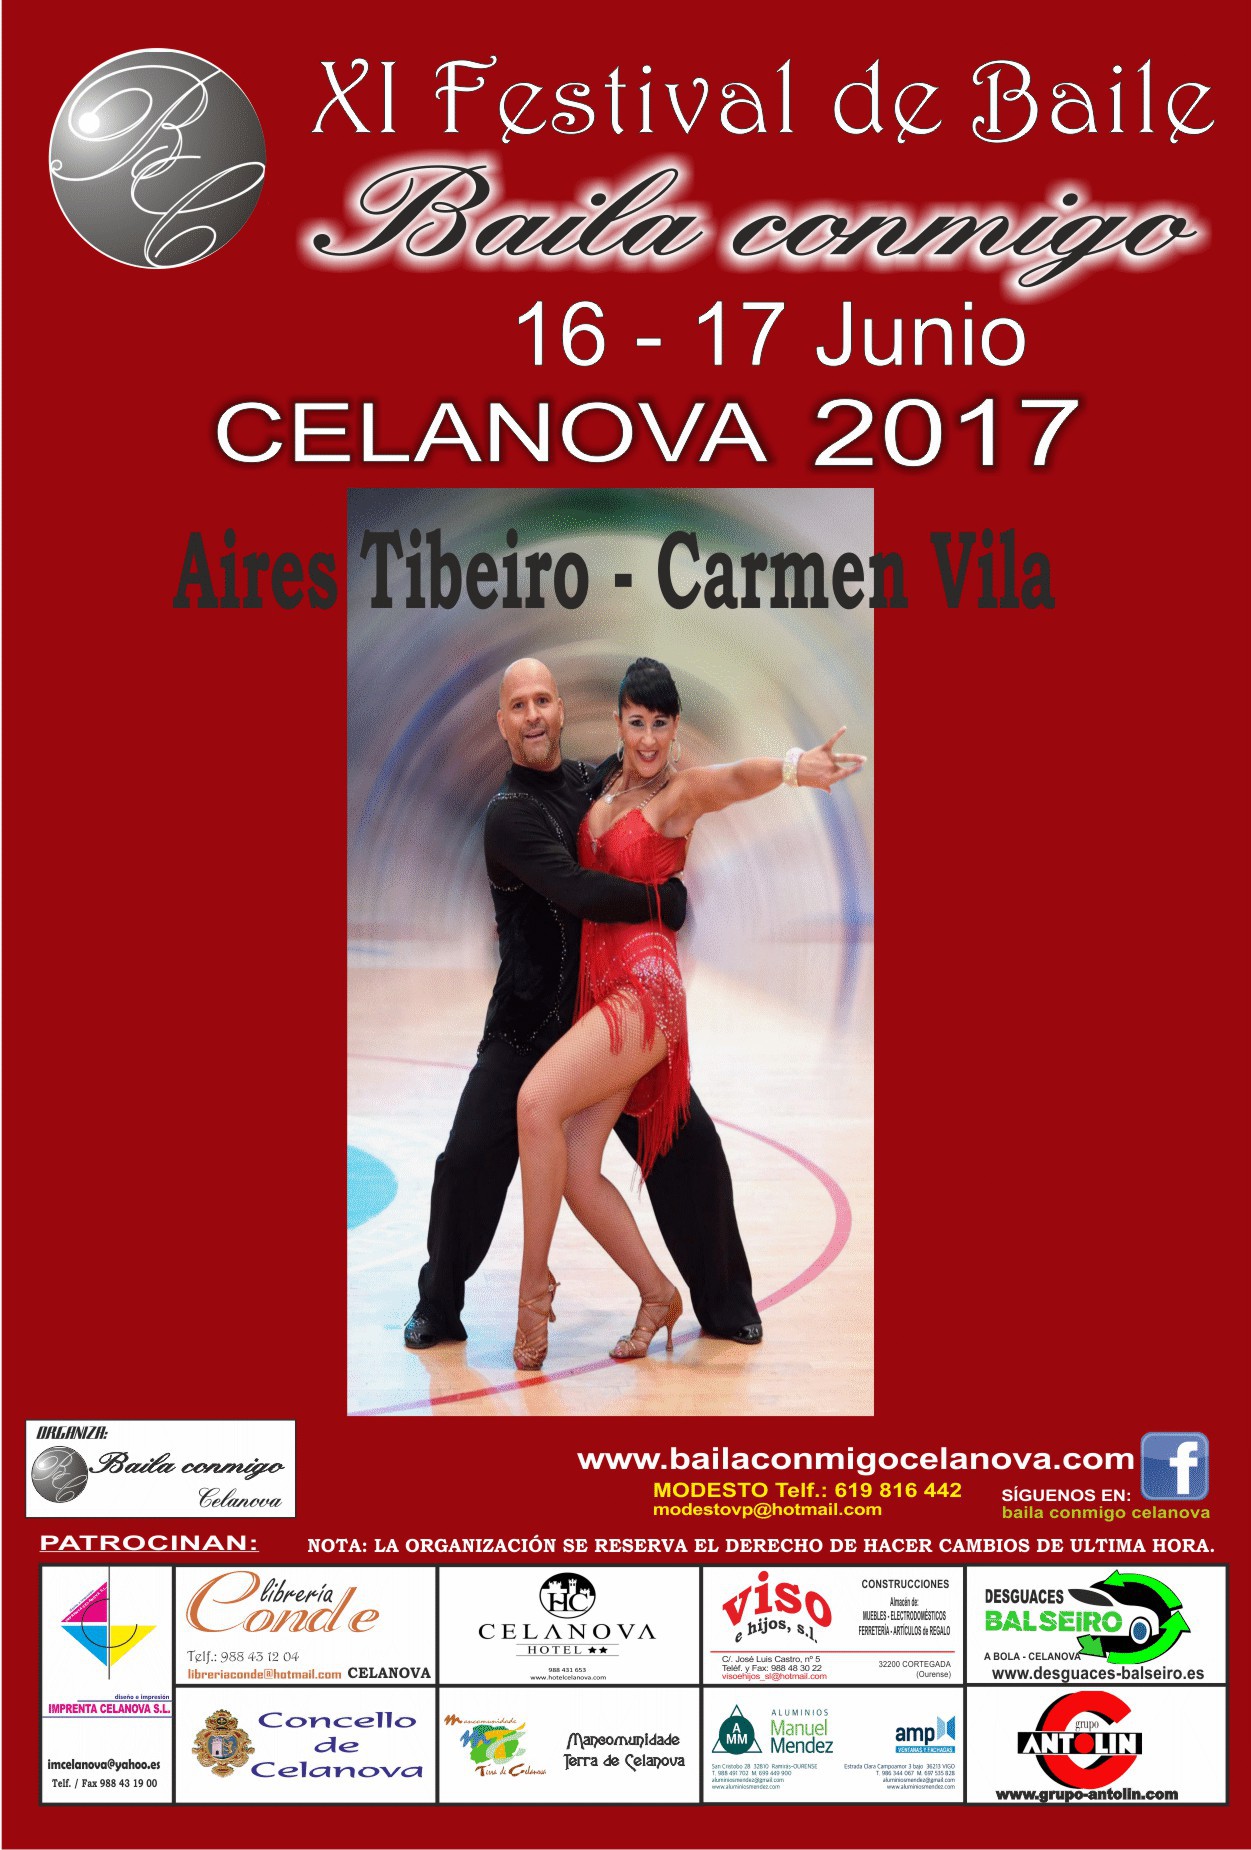 Aires Tibeiro y Carmen Vila